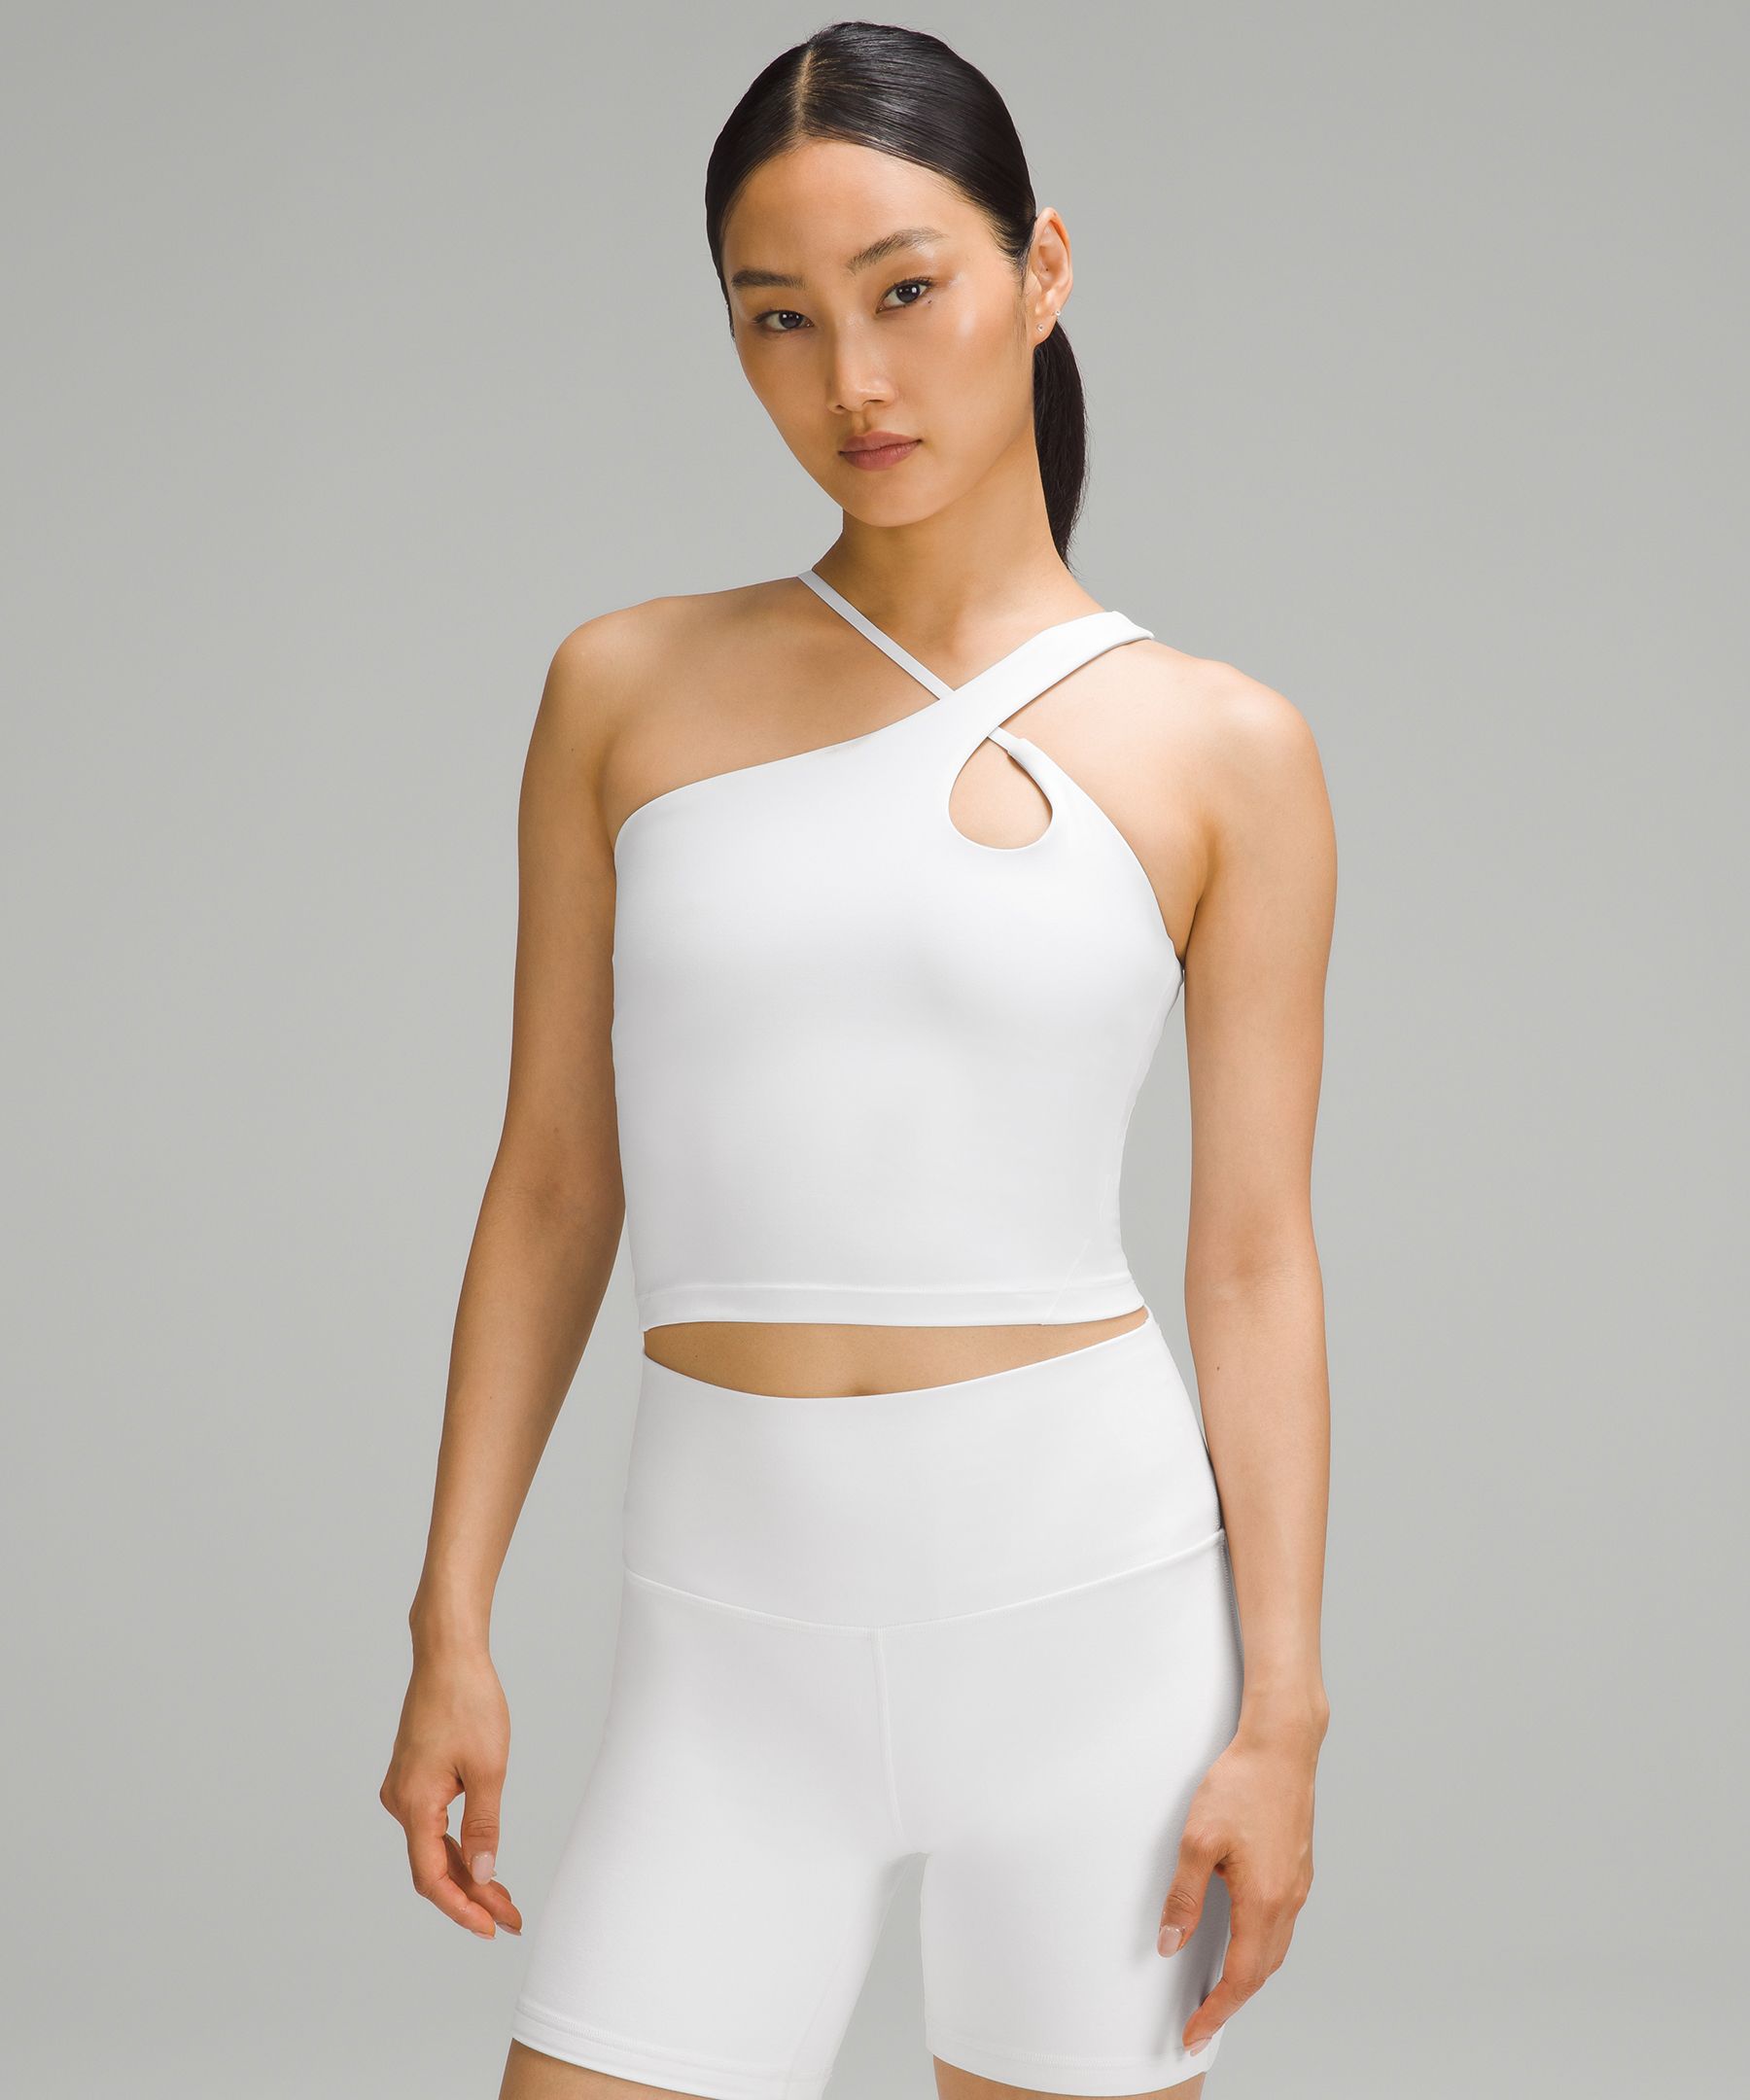 lululemon - White Align Tank on Designer Wardrobe